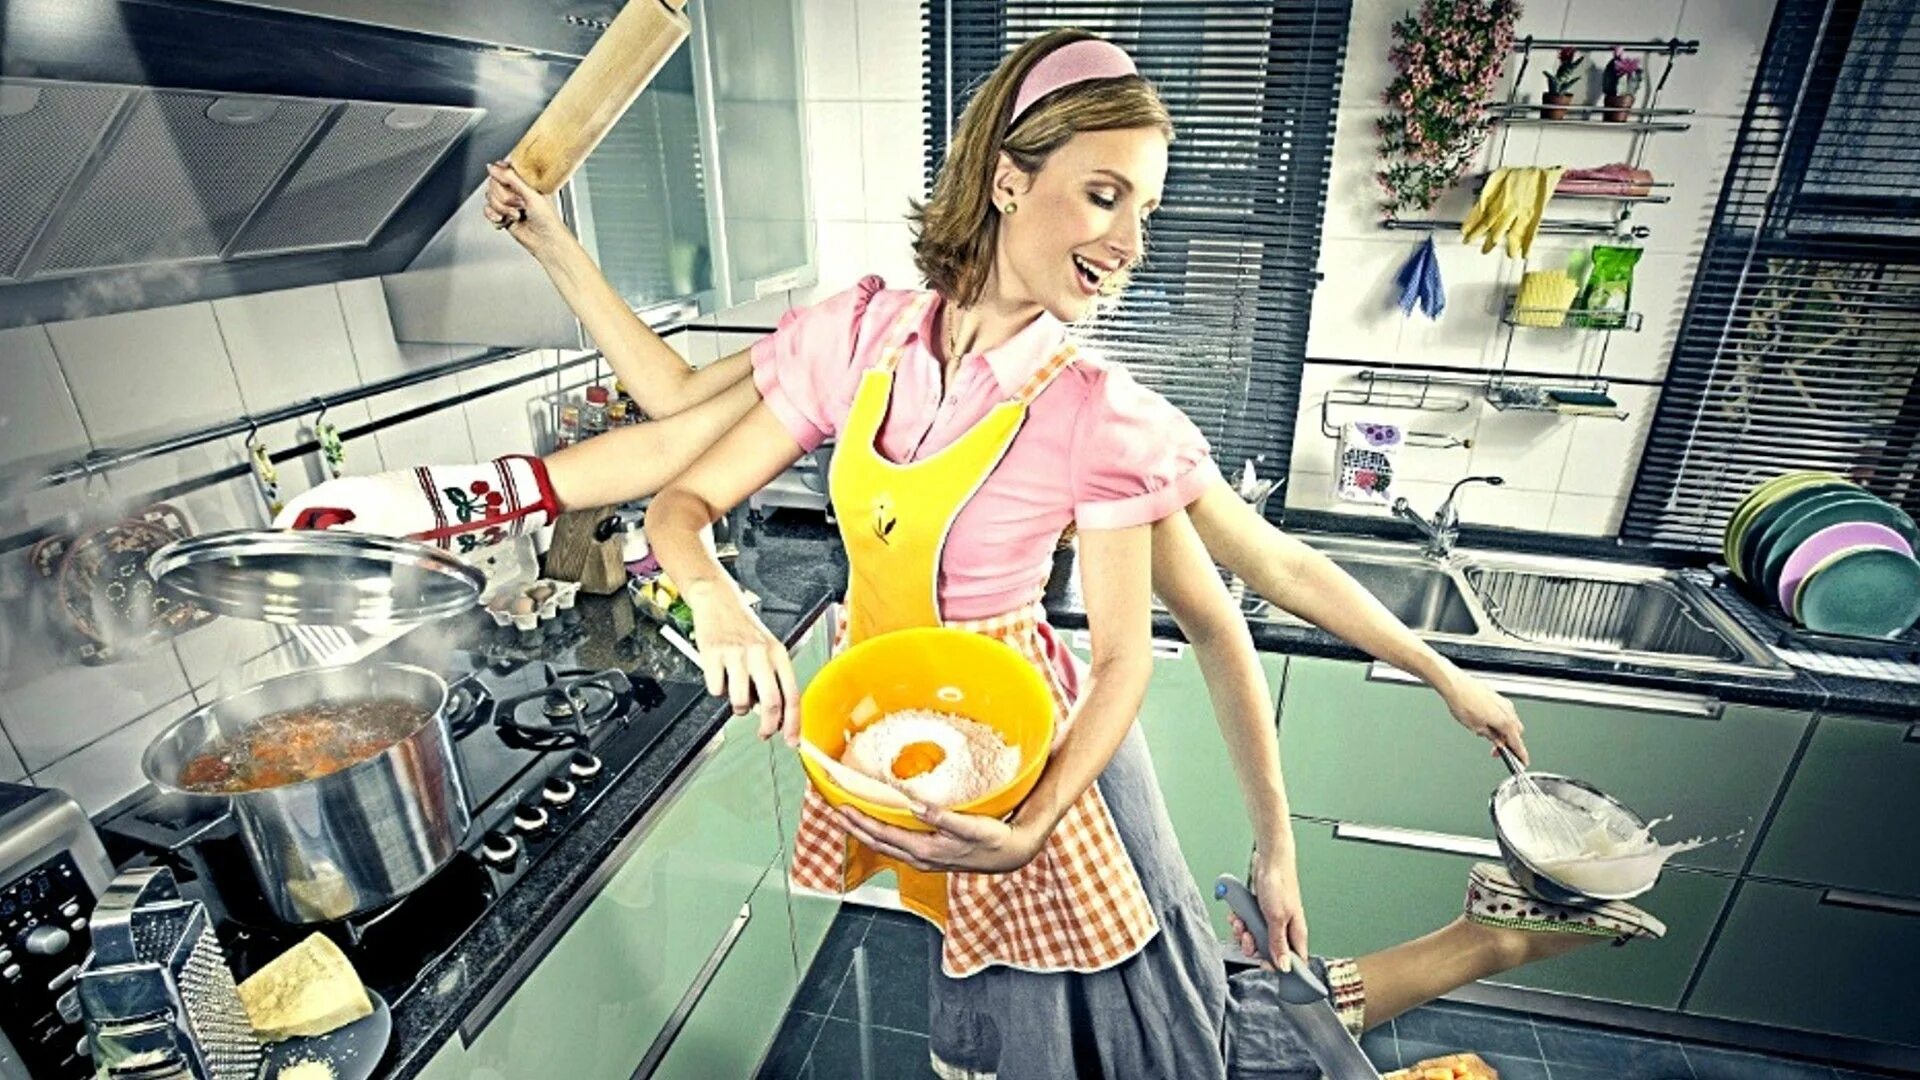 Я хозяйка этой жизни 133. Женщина домохозяйка. Кухня. Домохозяйка со стажем. Примерная жена.